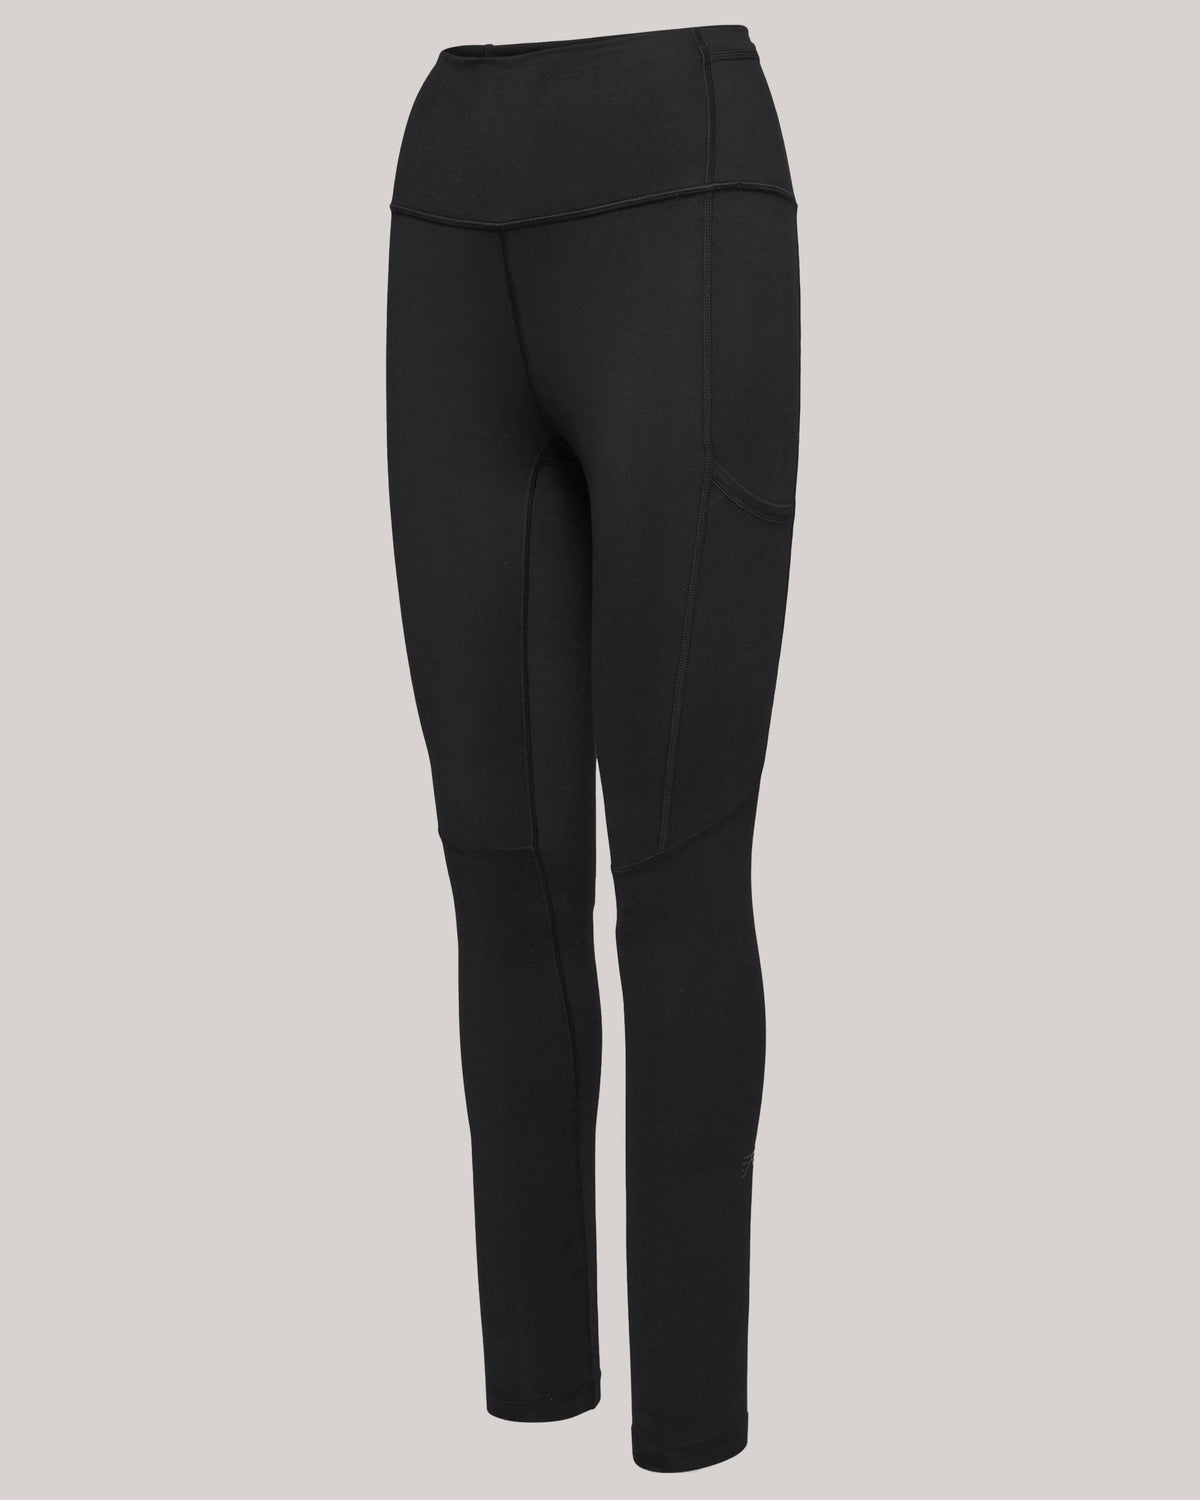 Elastic leggings with pocket in grey, 11.99€